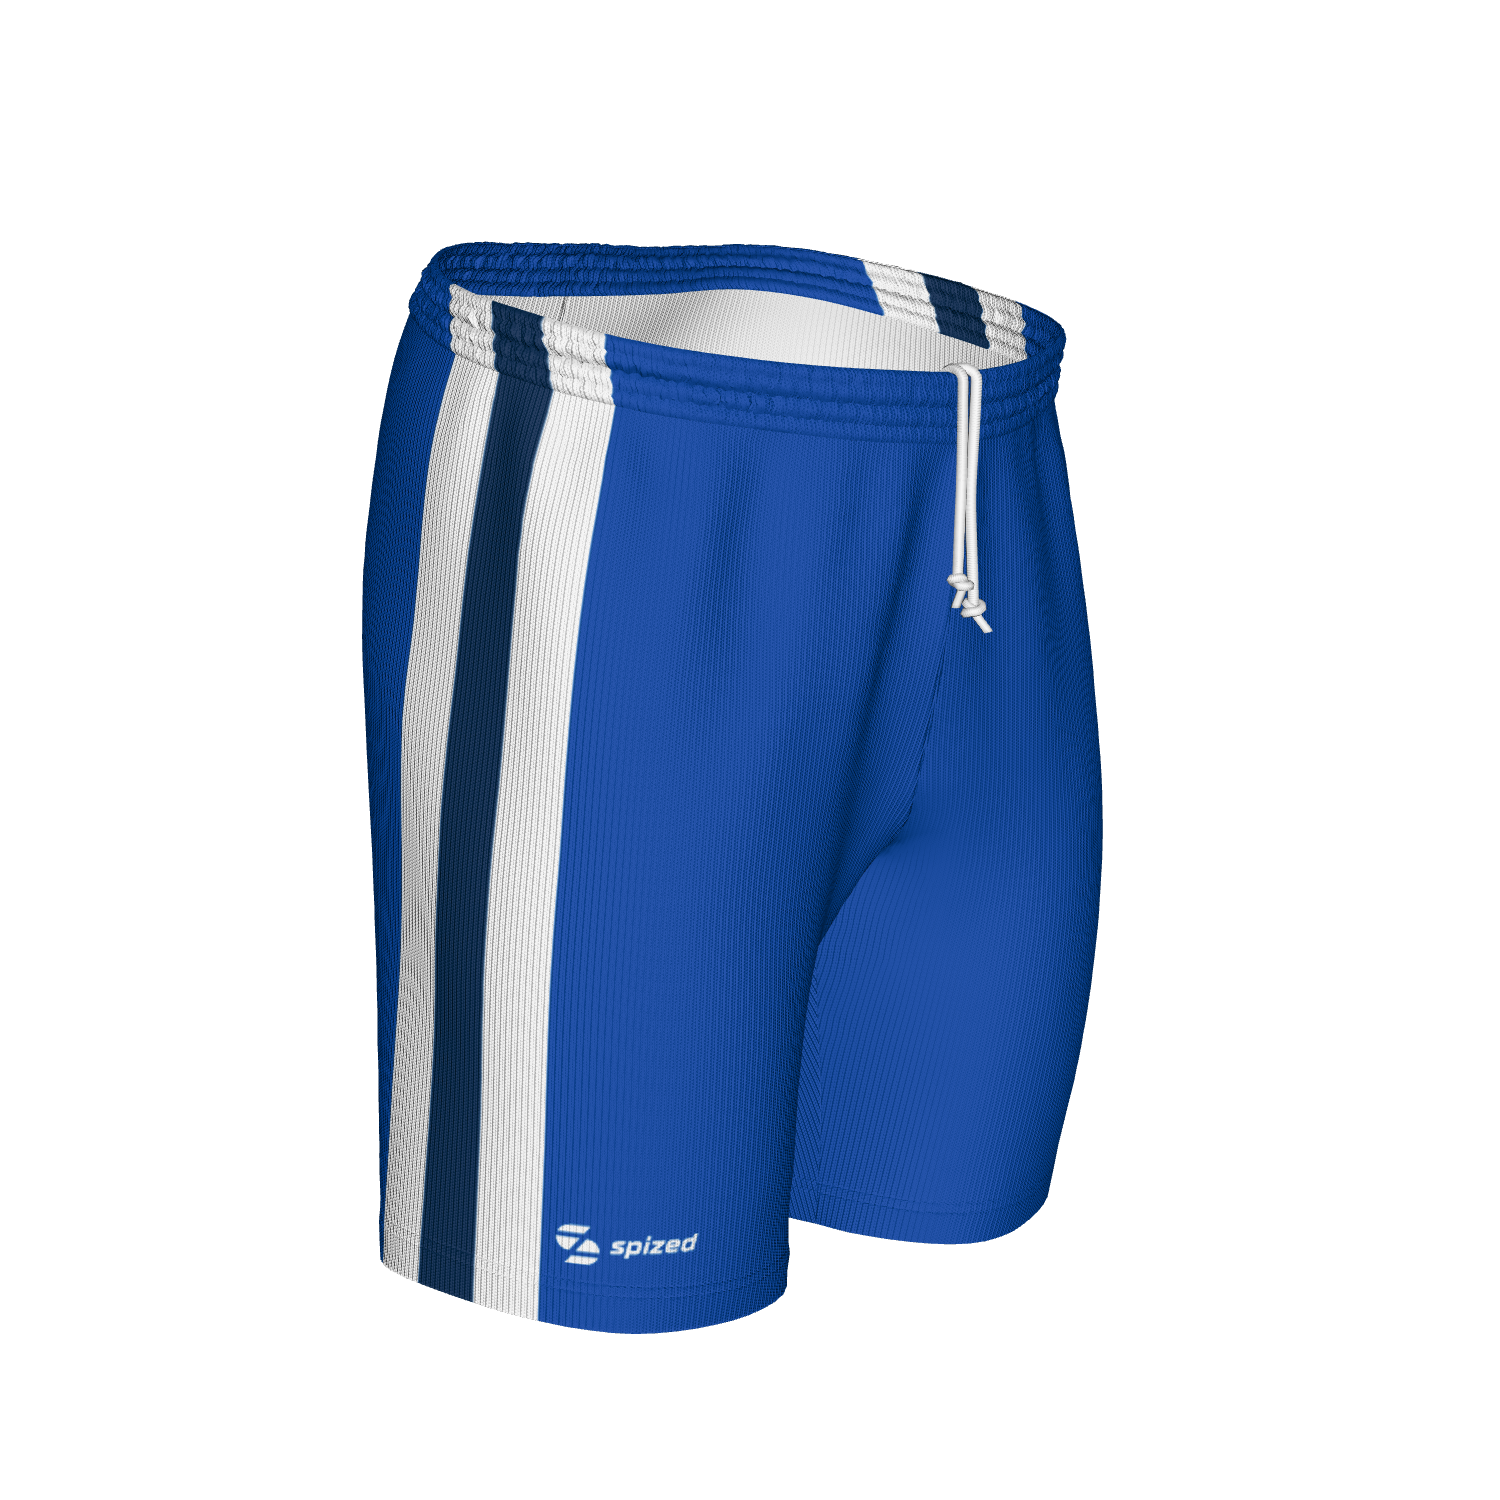 Paulo men’s football shorts